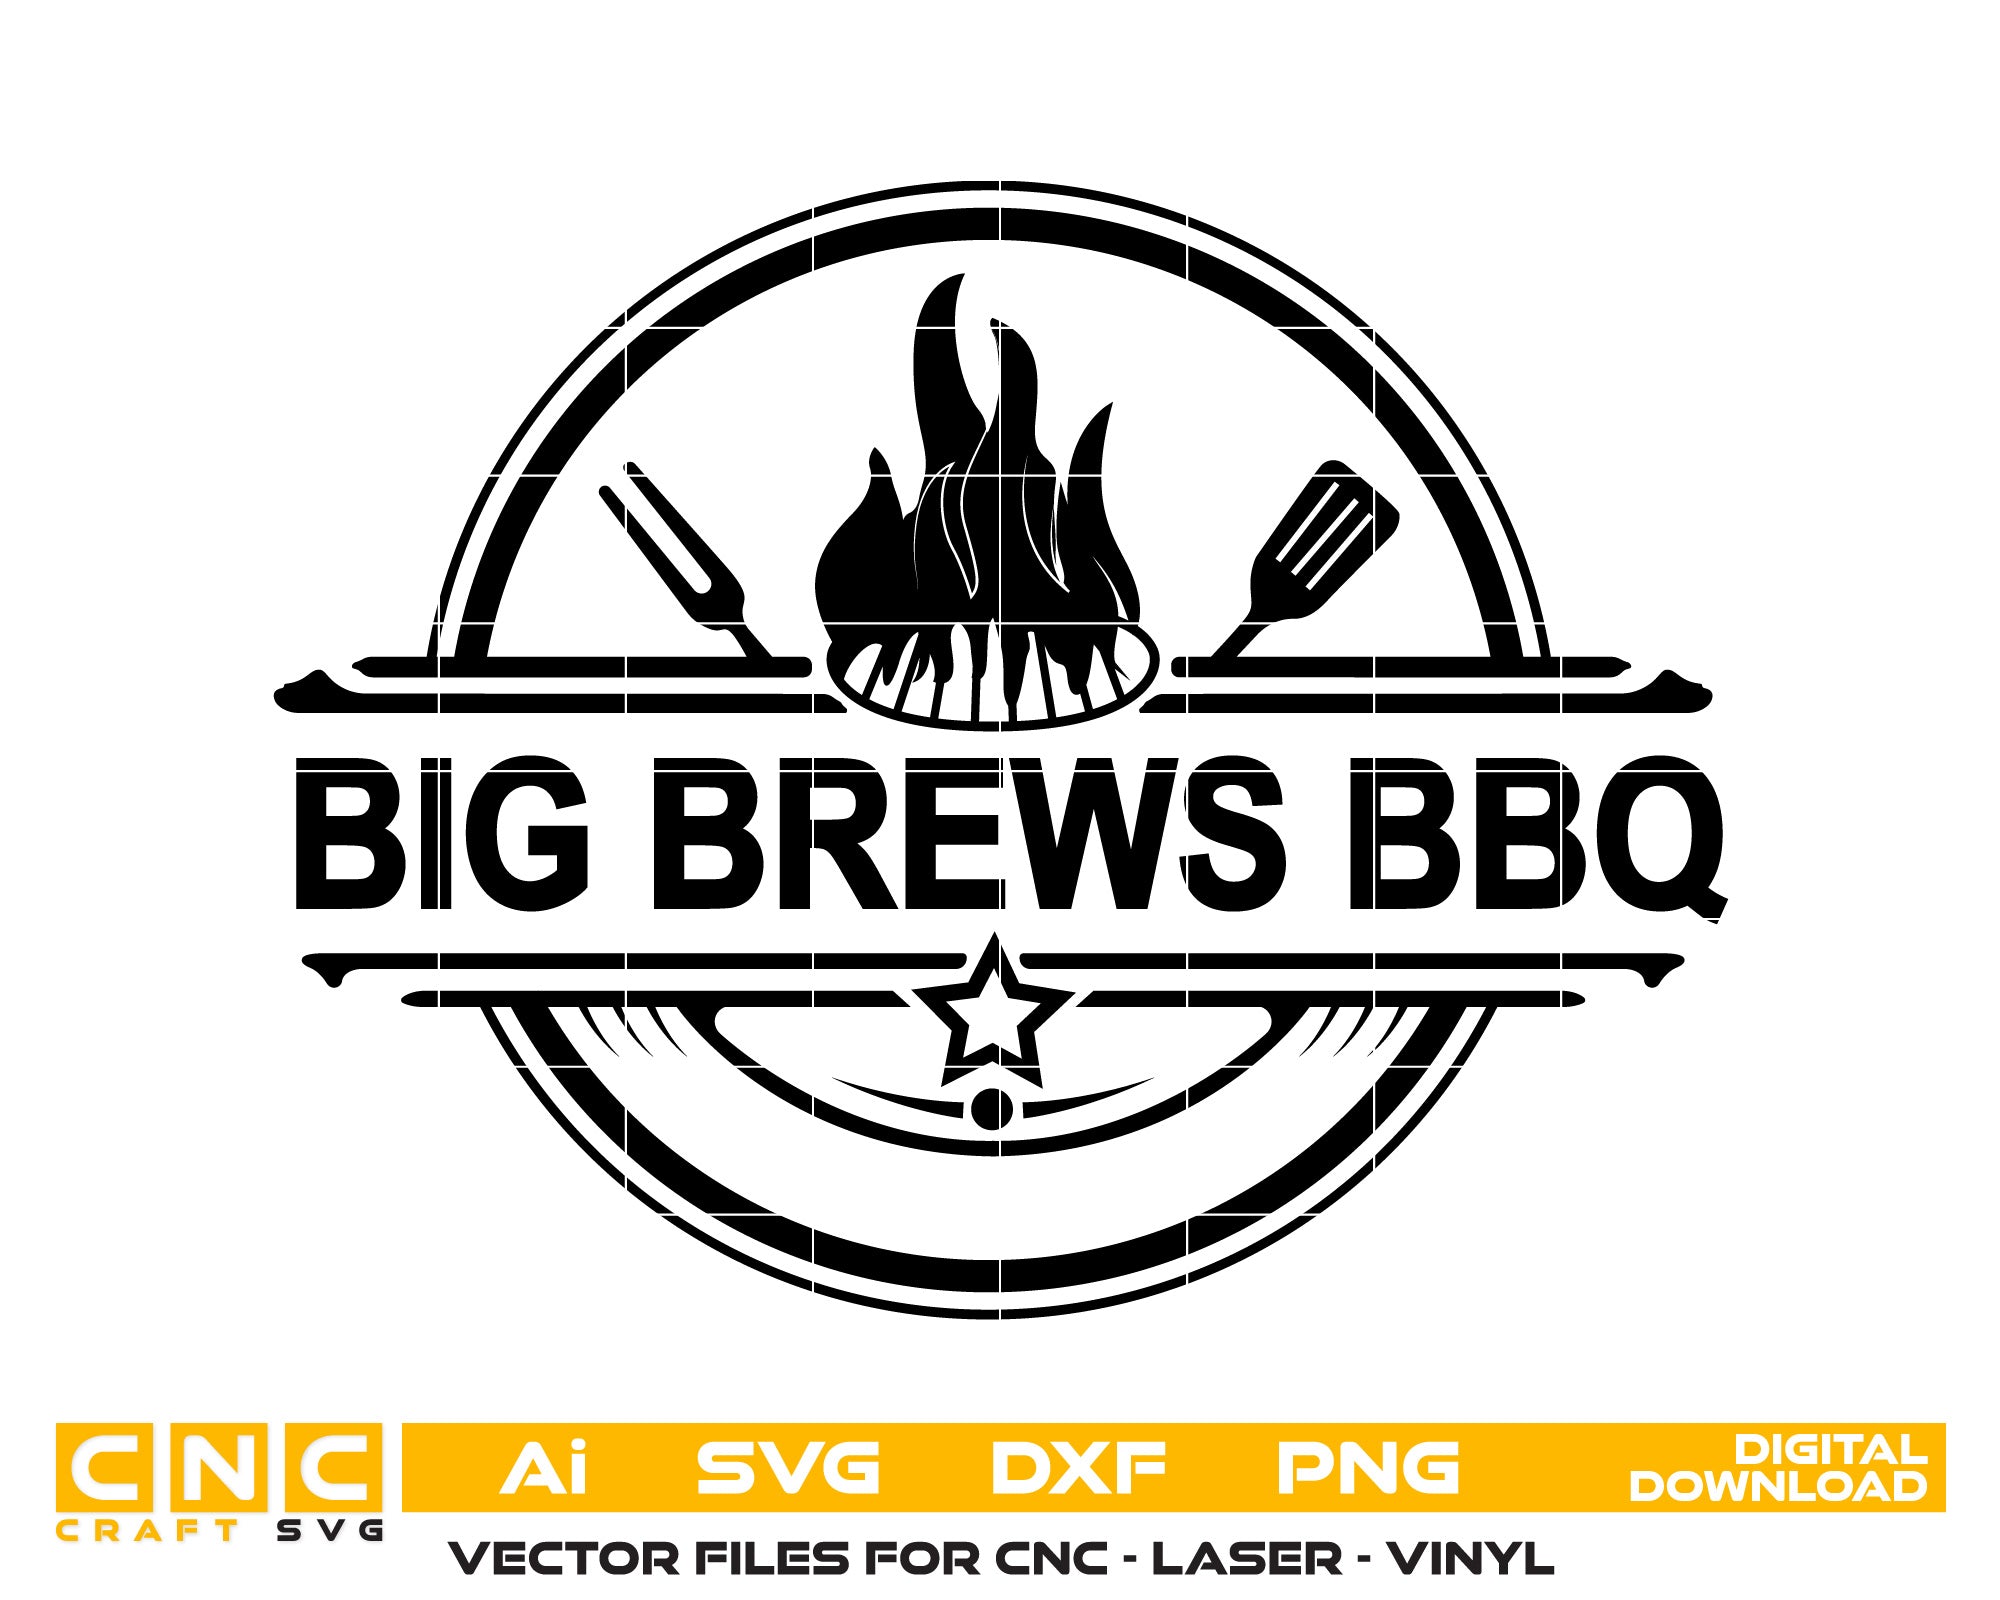 Big Brews BBQ Vector Art, Ai,SVG, DXF, PNG, Digital Files